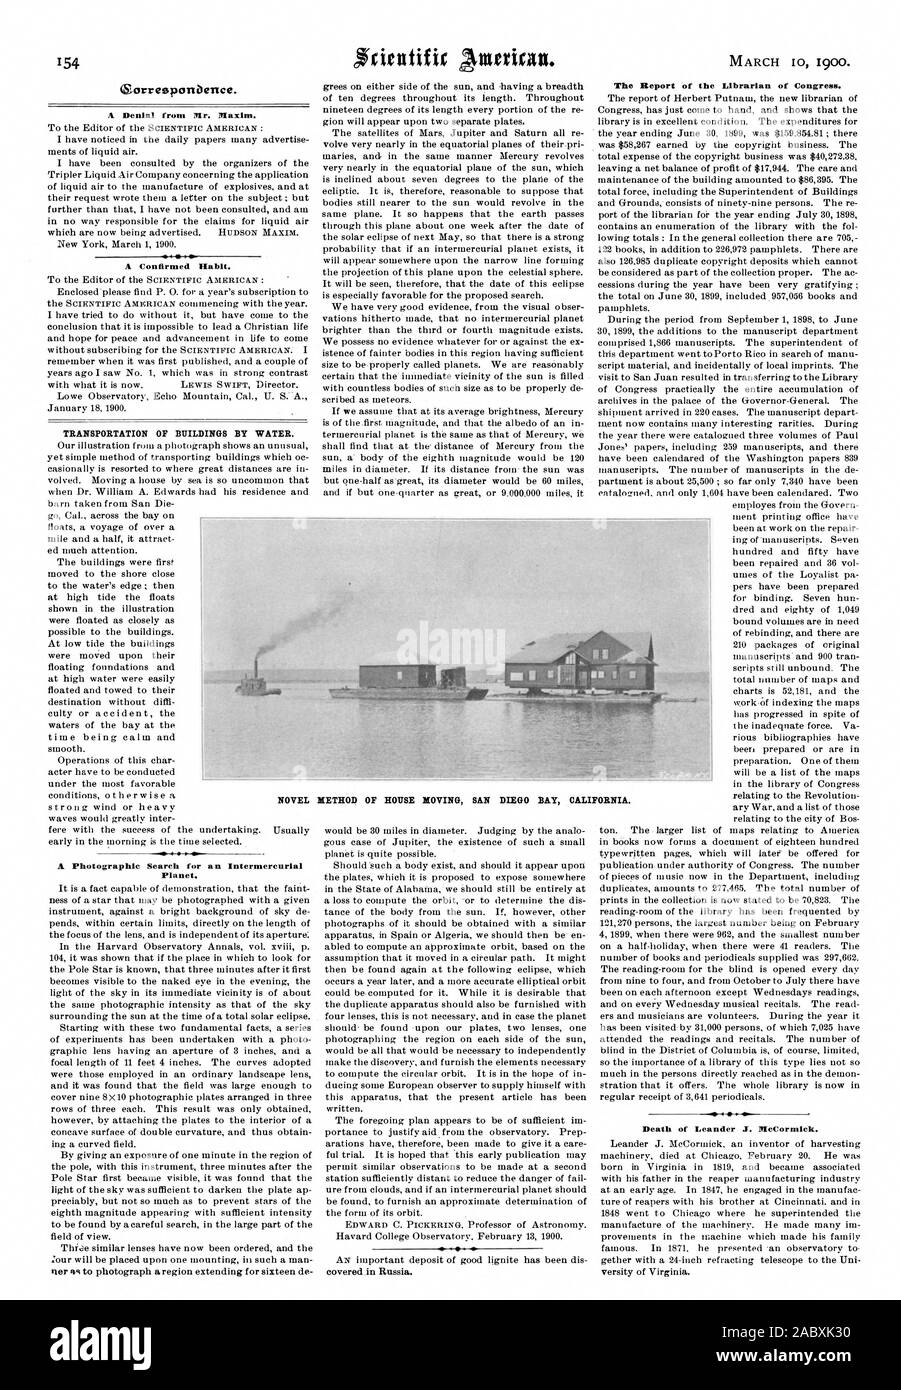 Transport von Gebäuden, die durch Wasser. Neuartige METHODE DES HAUSES, die Bucht von SAN DIEGO CALI FORNIA., Scientific American, 1900-03-10 Stockfoto